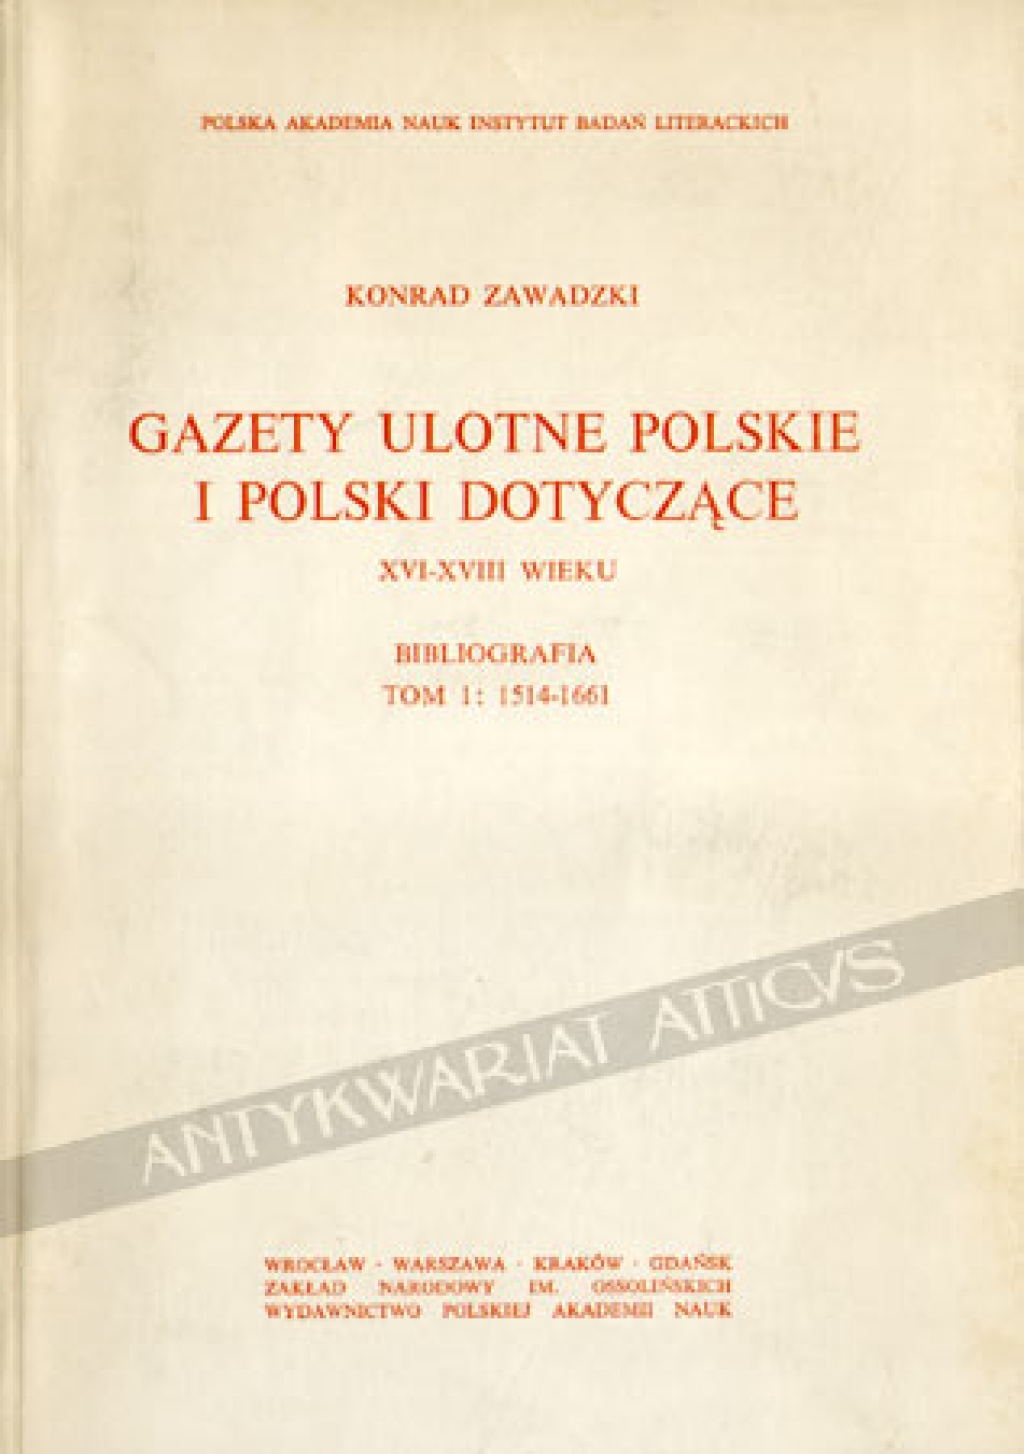 Gazety ulotne polskie i Polski dotyczące XVI-XVIII wieku. Bibliografia, Tom 1: 1514-1661